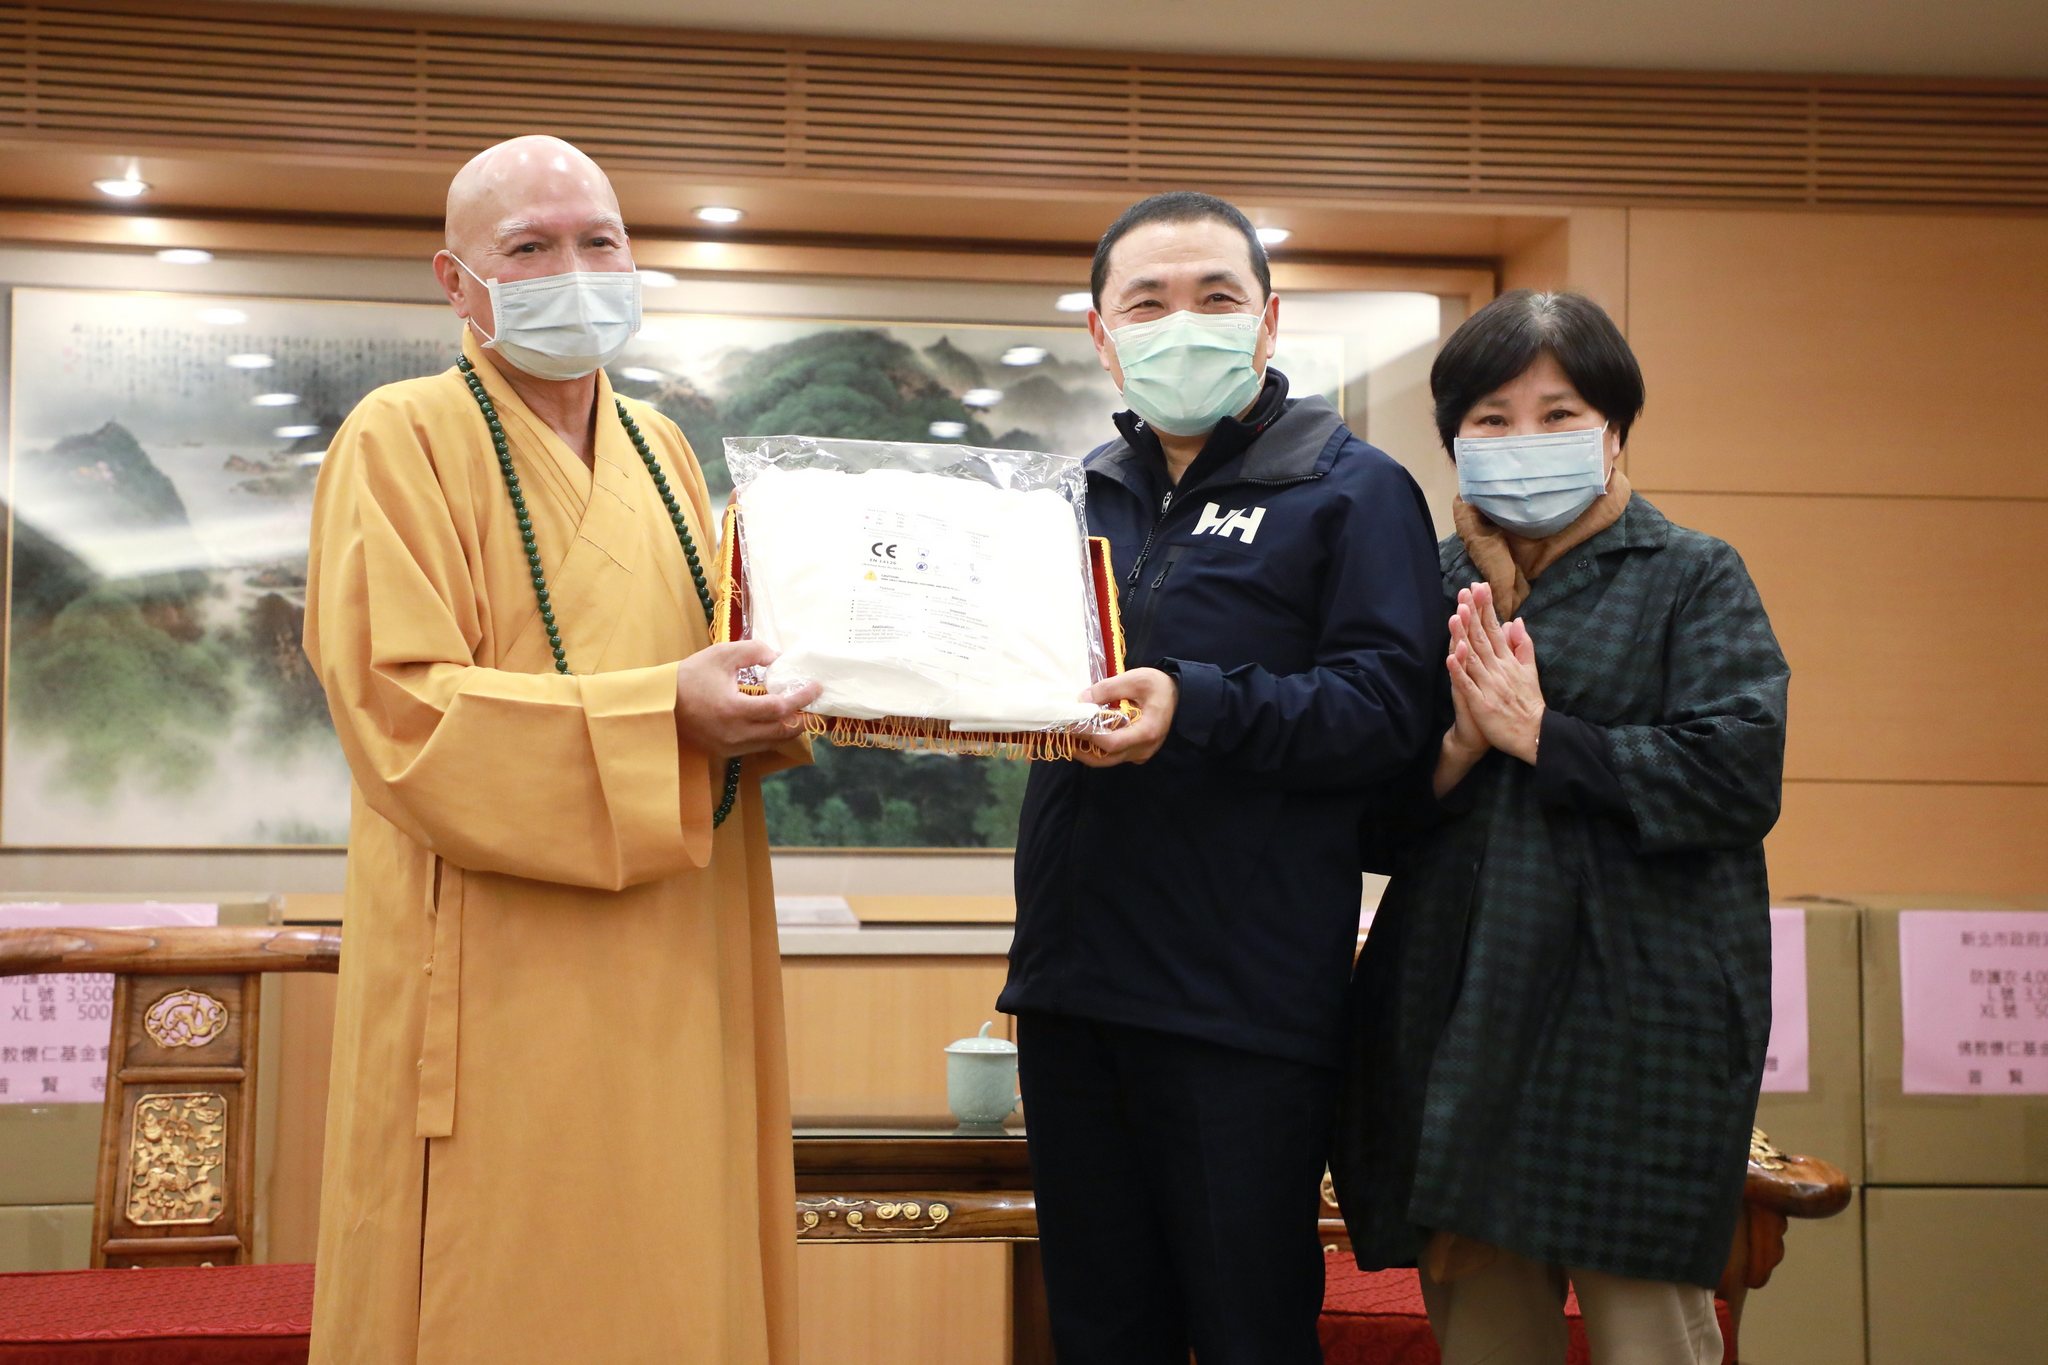 三峽普賢寺捐贈8千件全身式防護衣由侯友宜市長代表受贈